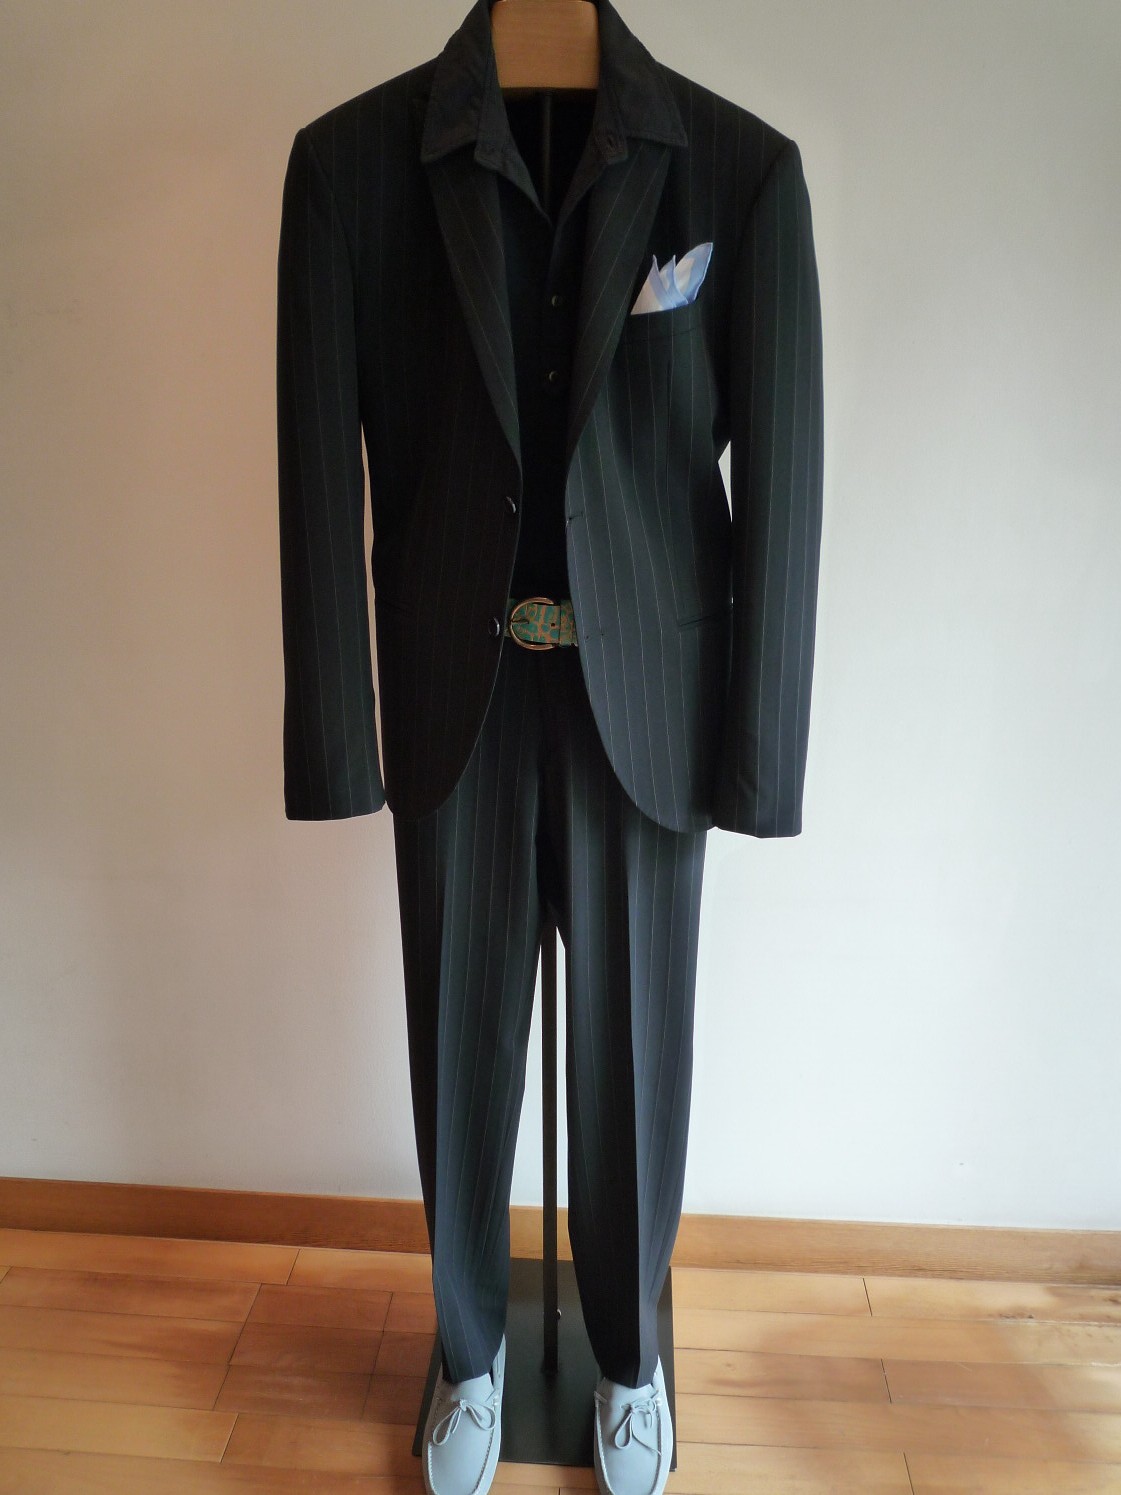 suit2